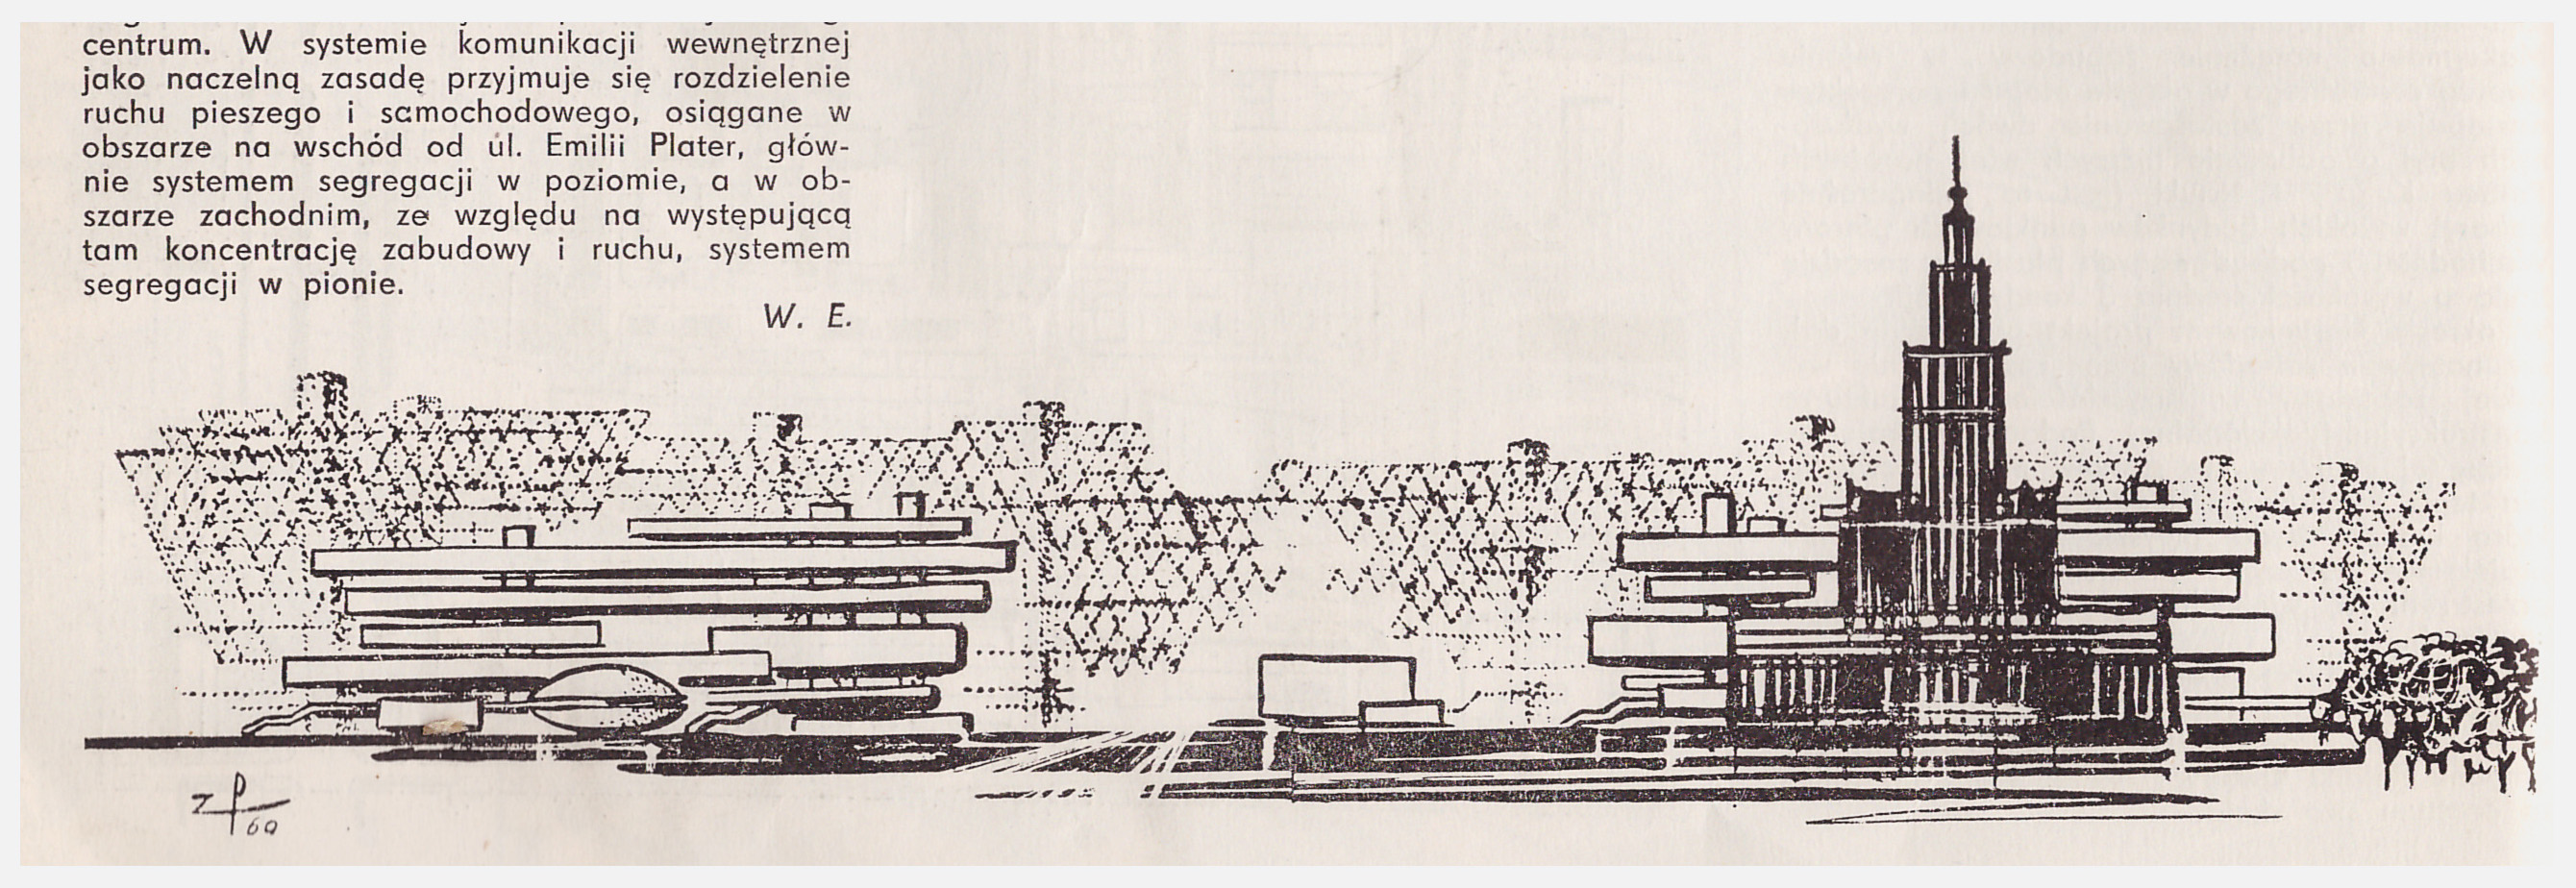 Konkurs otwarty, 1969 r. Projekt zespołu Wacława Eytnera. Równorzędna I nagroda. Kompozycja Ściany Zachodniej, źródło: "Architektura", 1970.